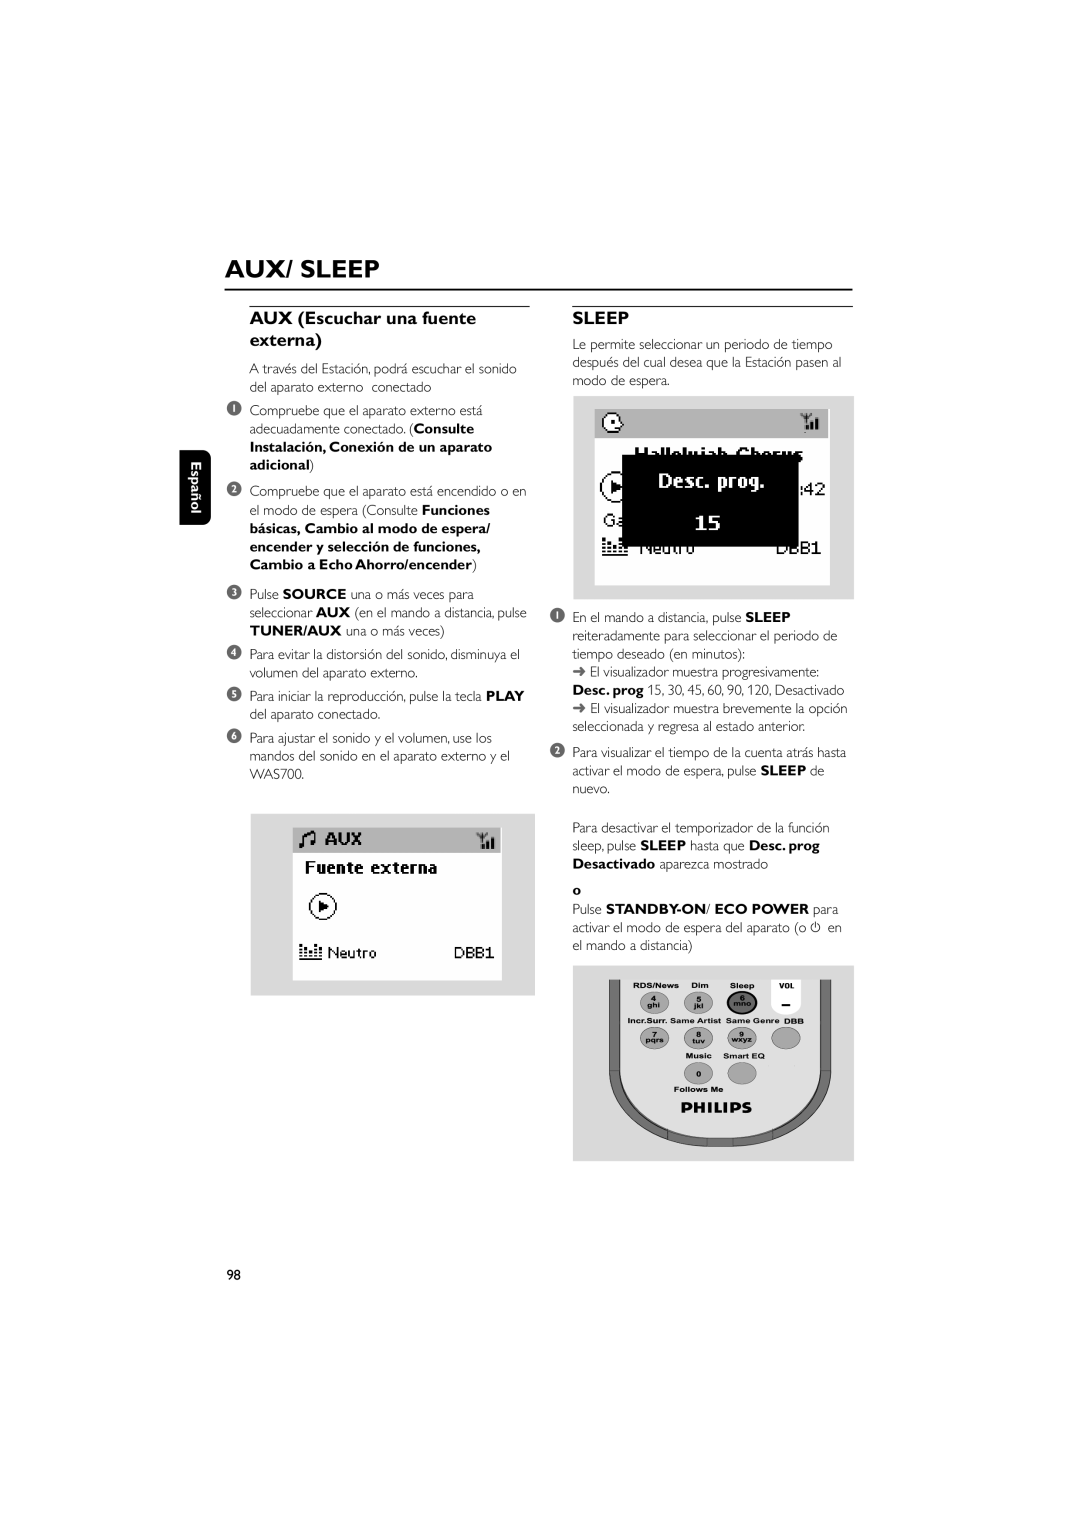 Philips WAS700 Aux/ Sleep, AUX Escuchar una fuente externa, Español, Instalación, Conexión de un aparato adicional 